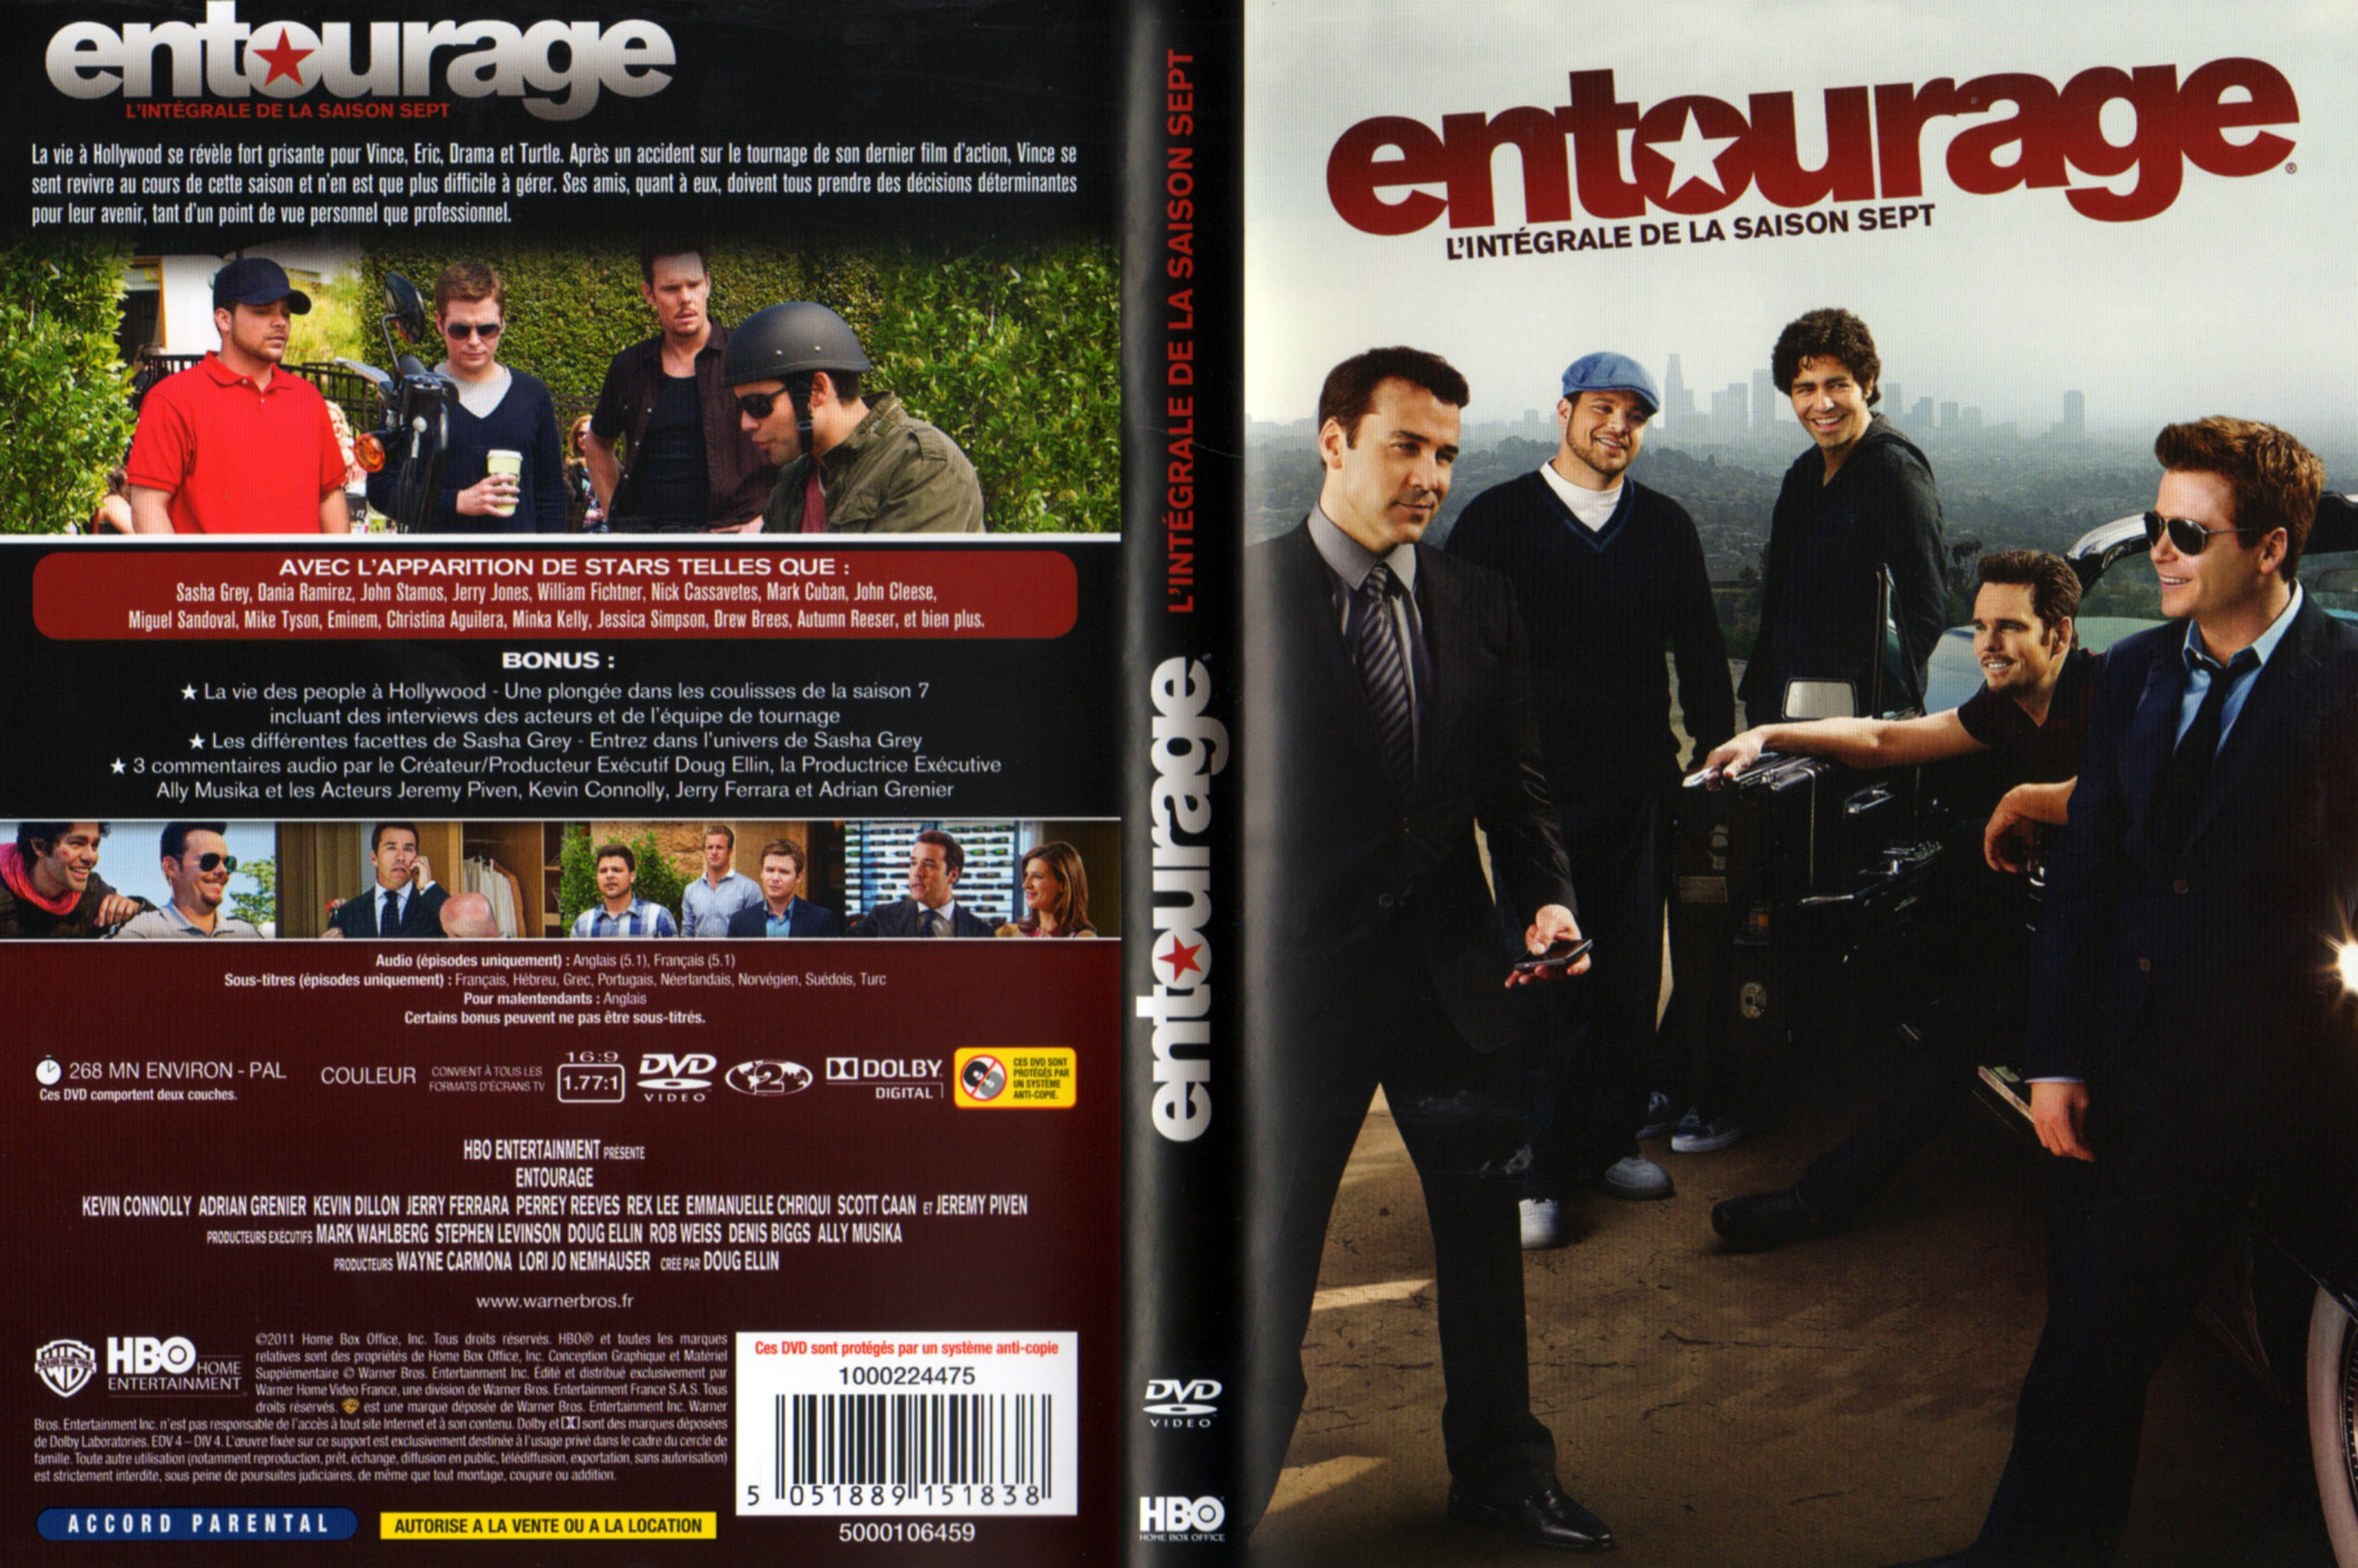 Jaquette DVD Entourage Saison 7